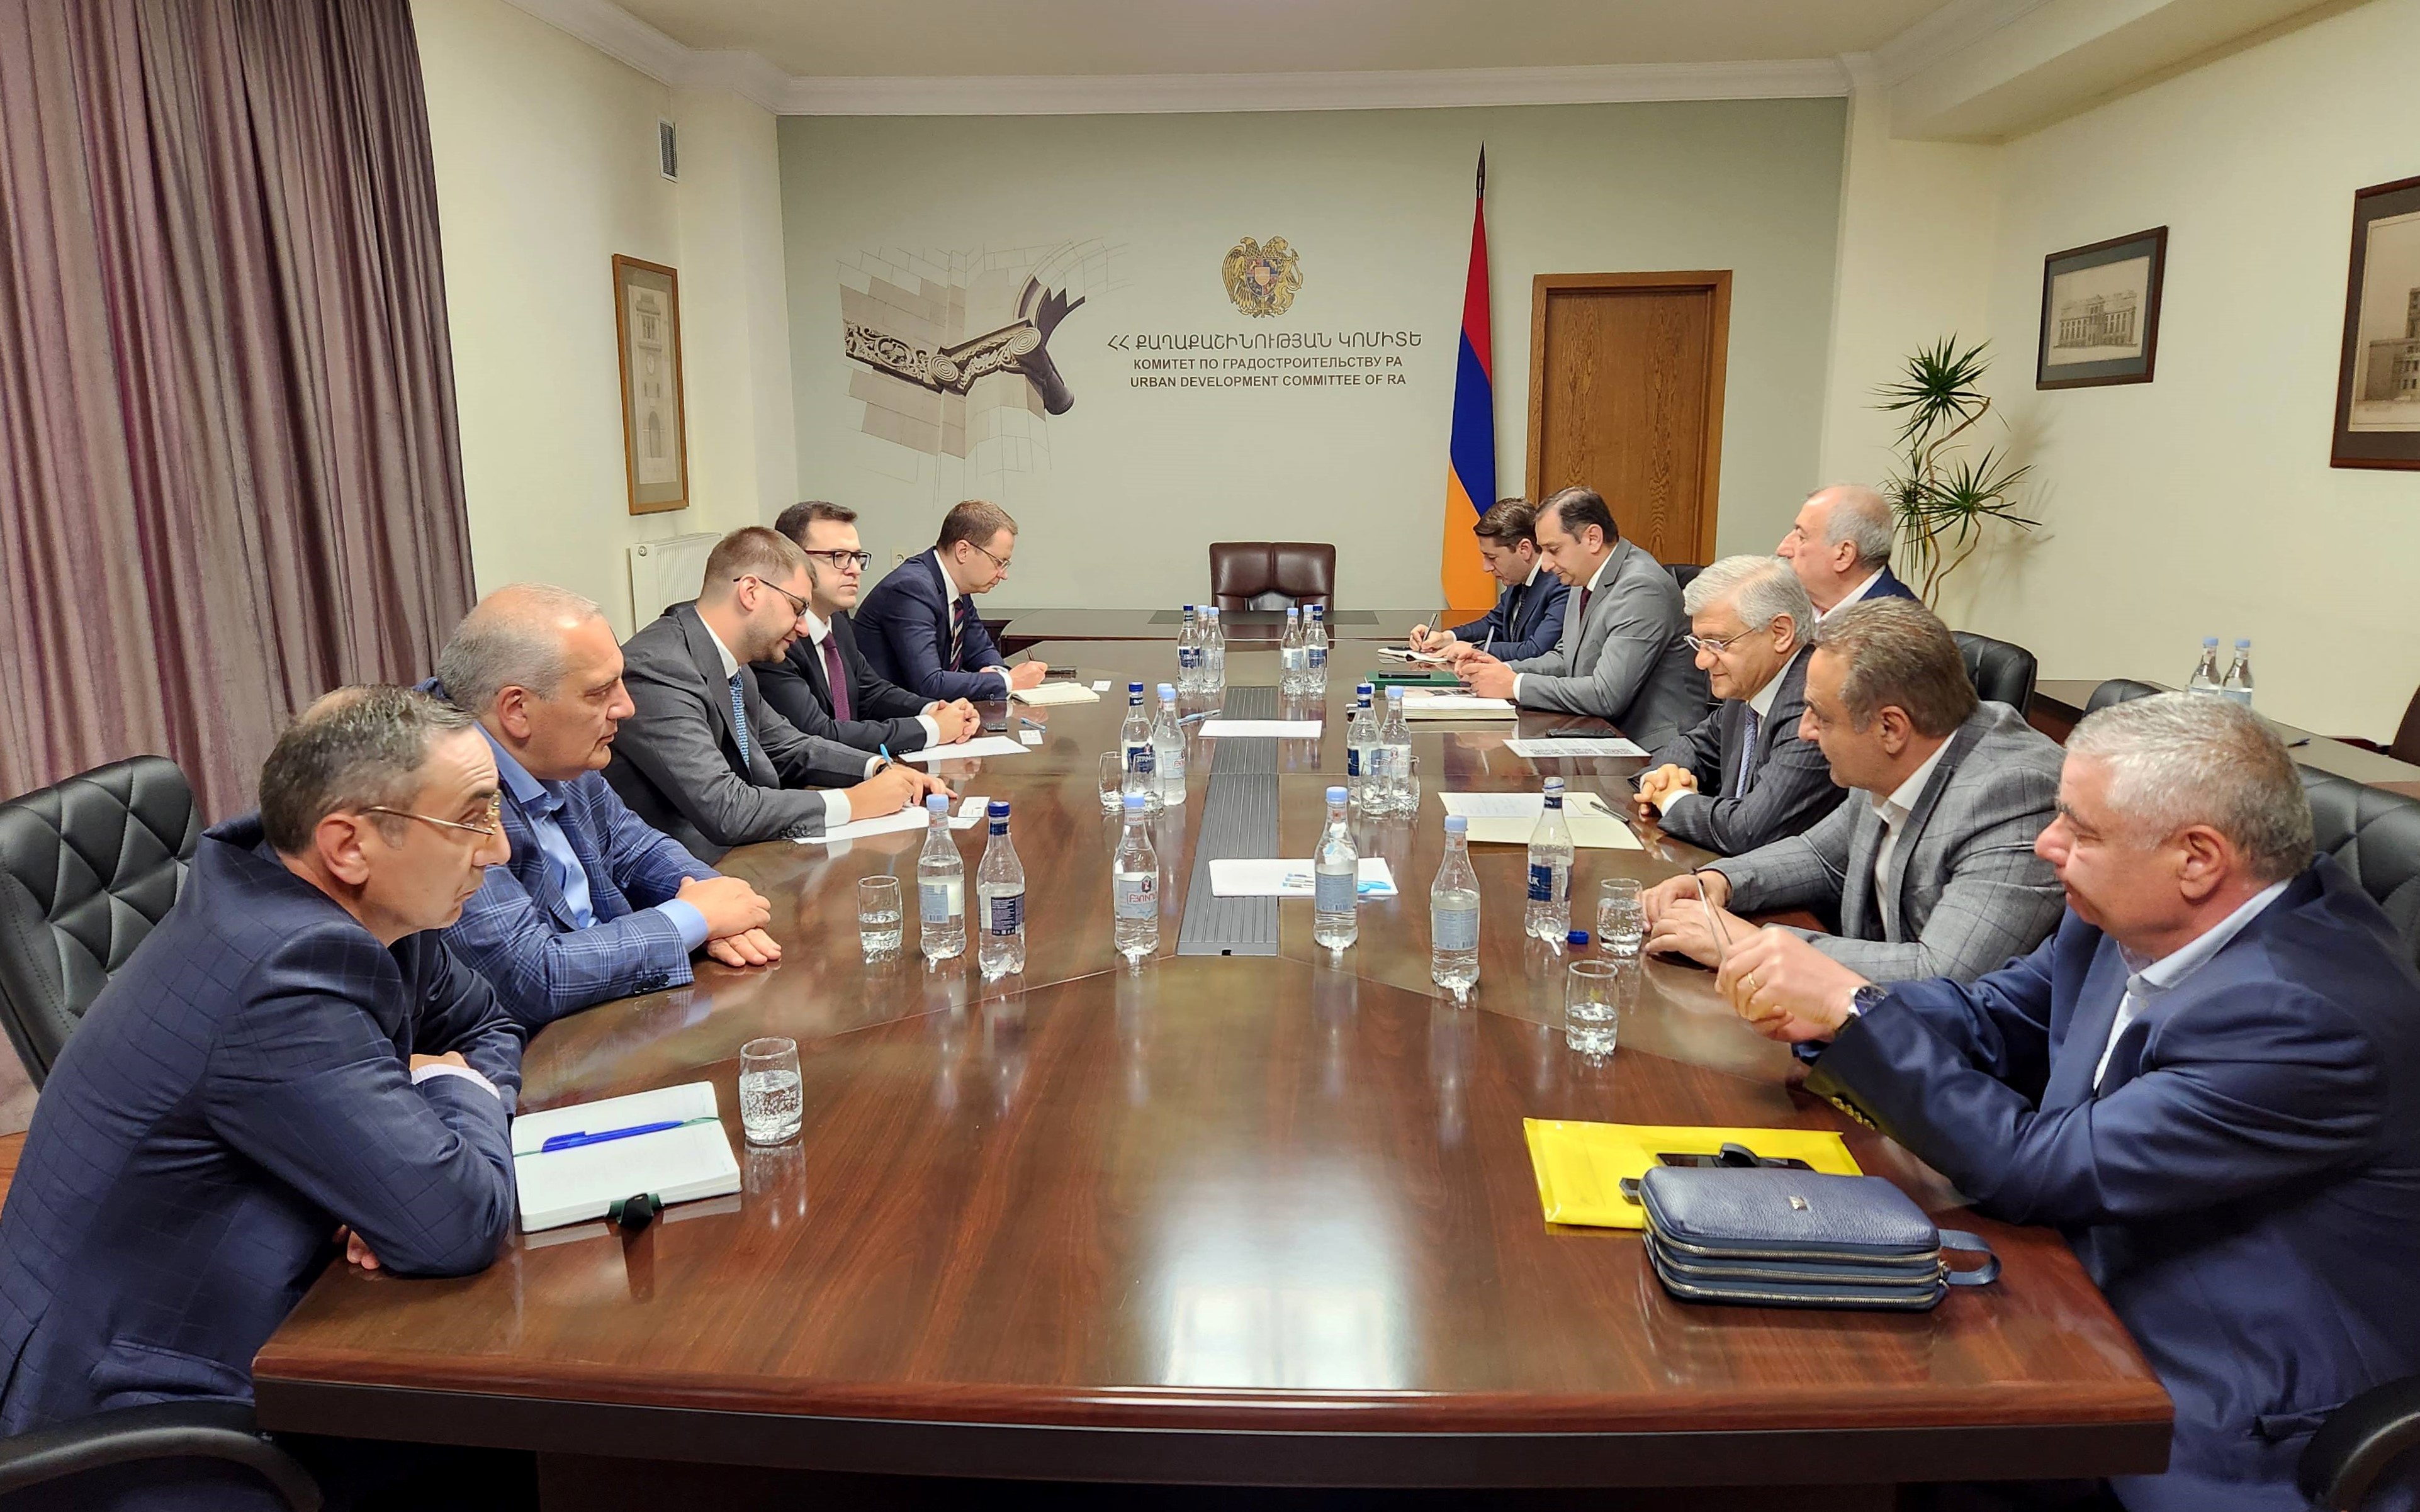 Металлургическая компания «Новосталь-М» намерена открыть в Армении свое представительство